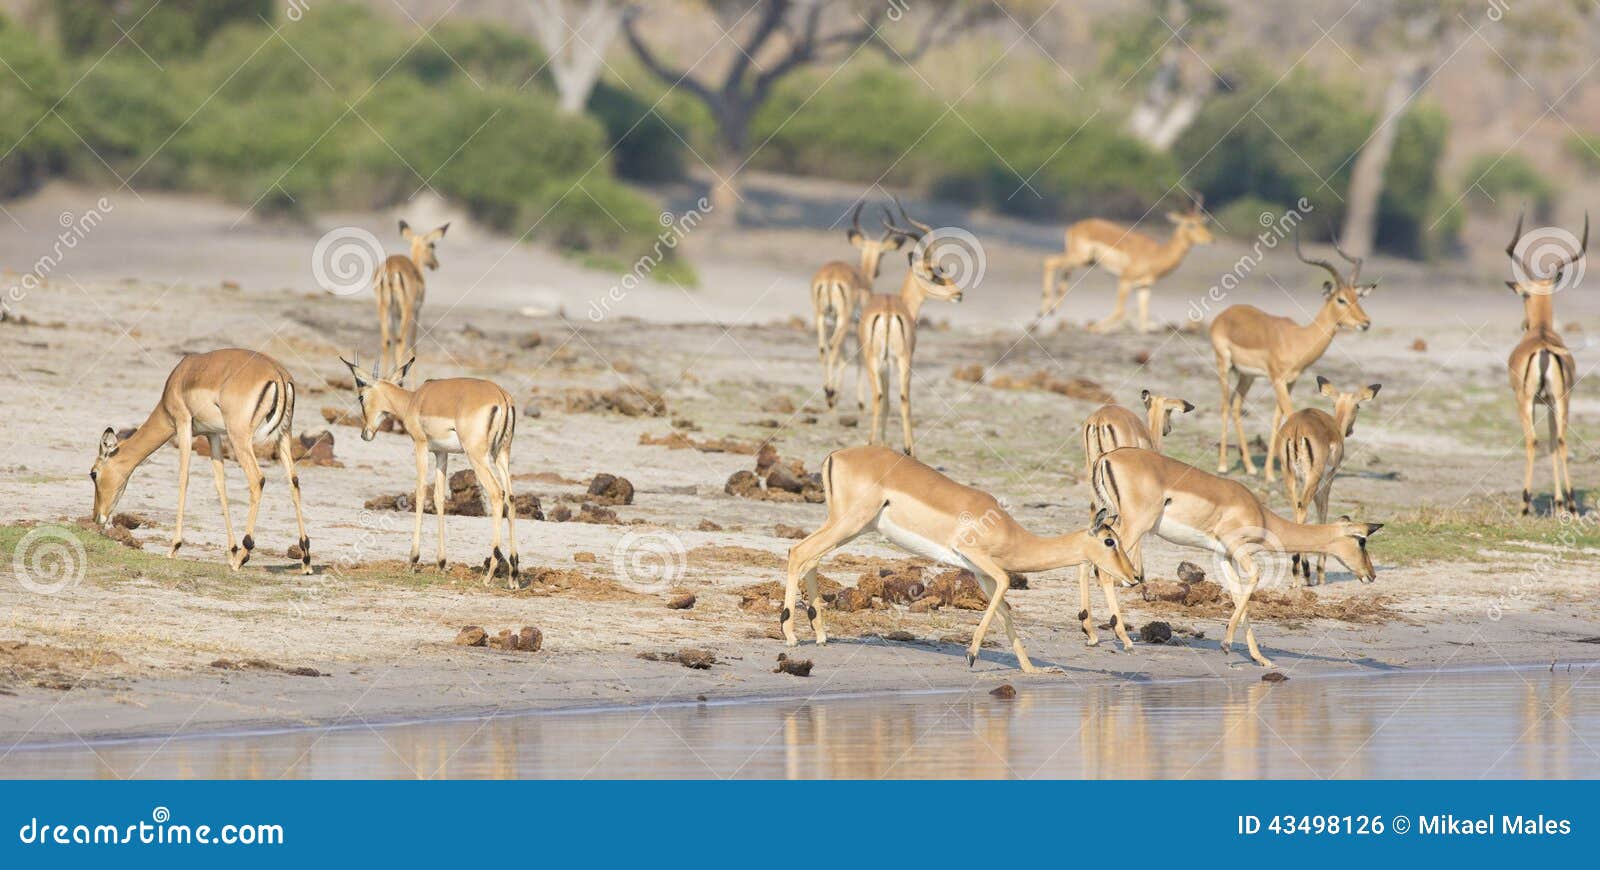 panoramic of herd of gazelles at river